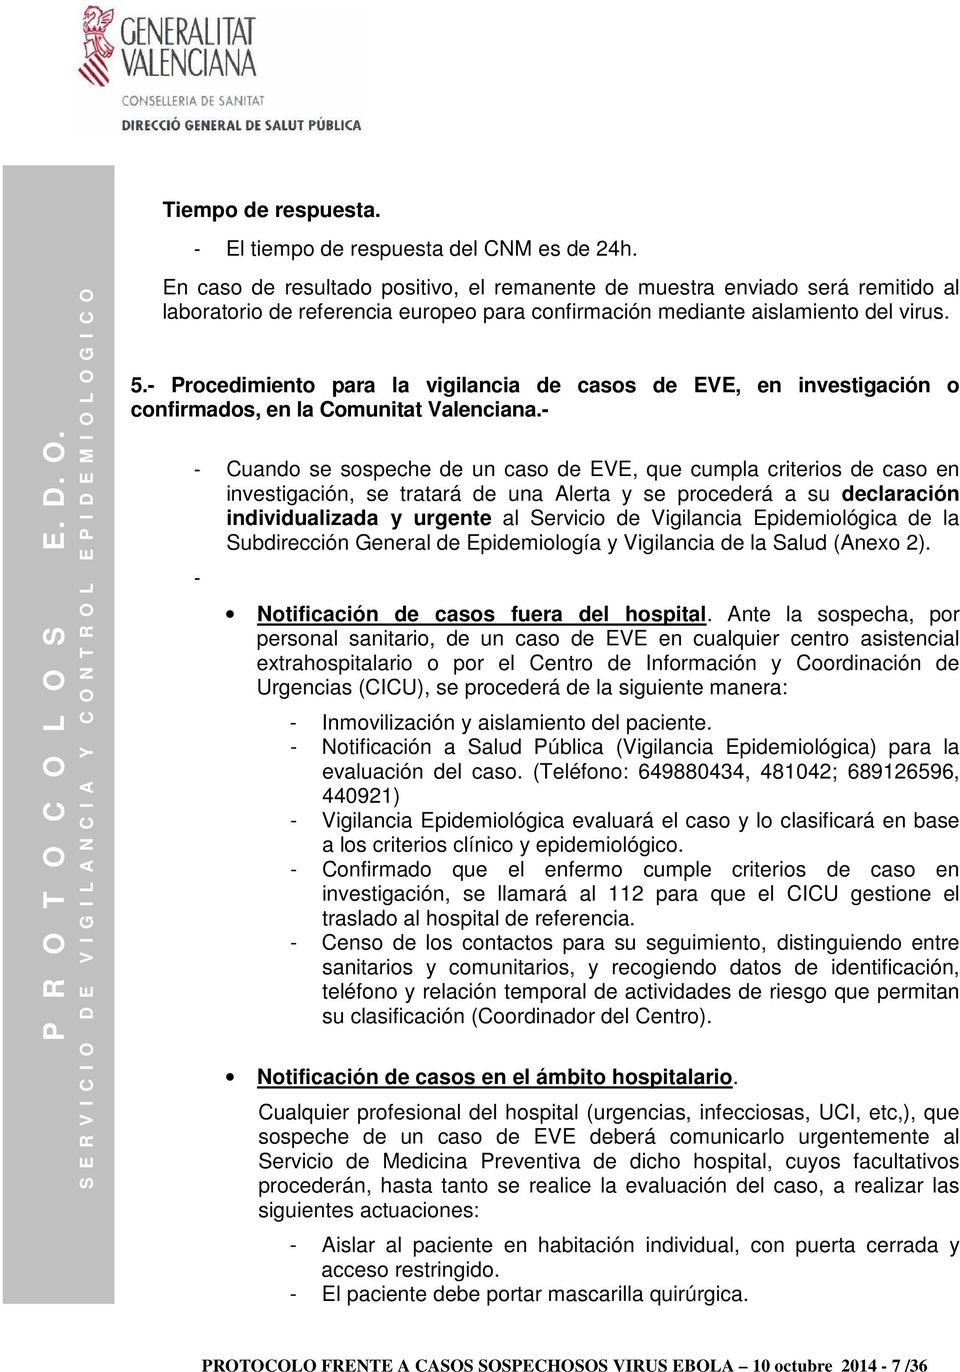 - Procedimiento para la vigilancia de casos de EVE, en investigación o confirmados, en la Comunitat Valenciana.